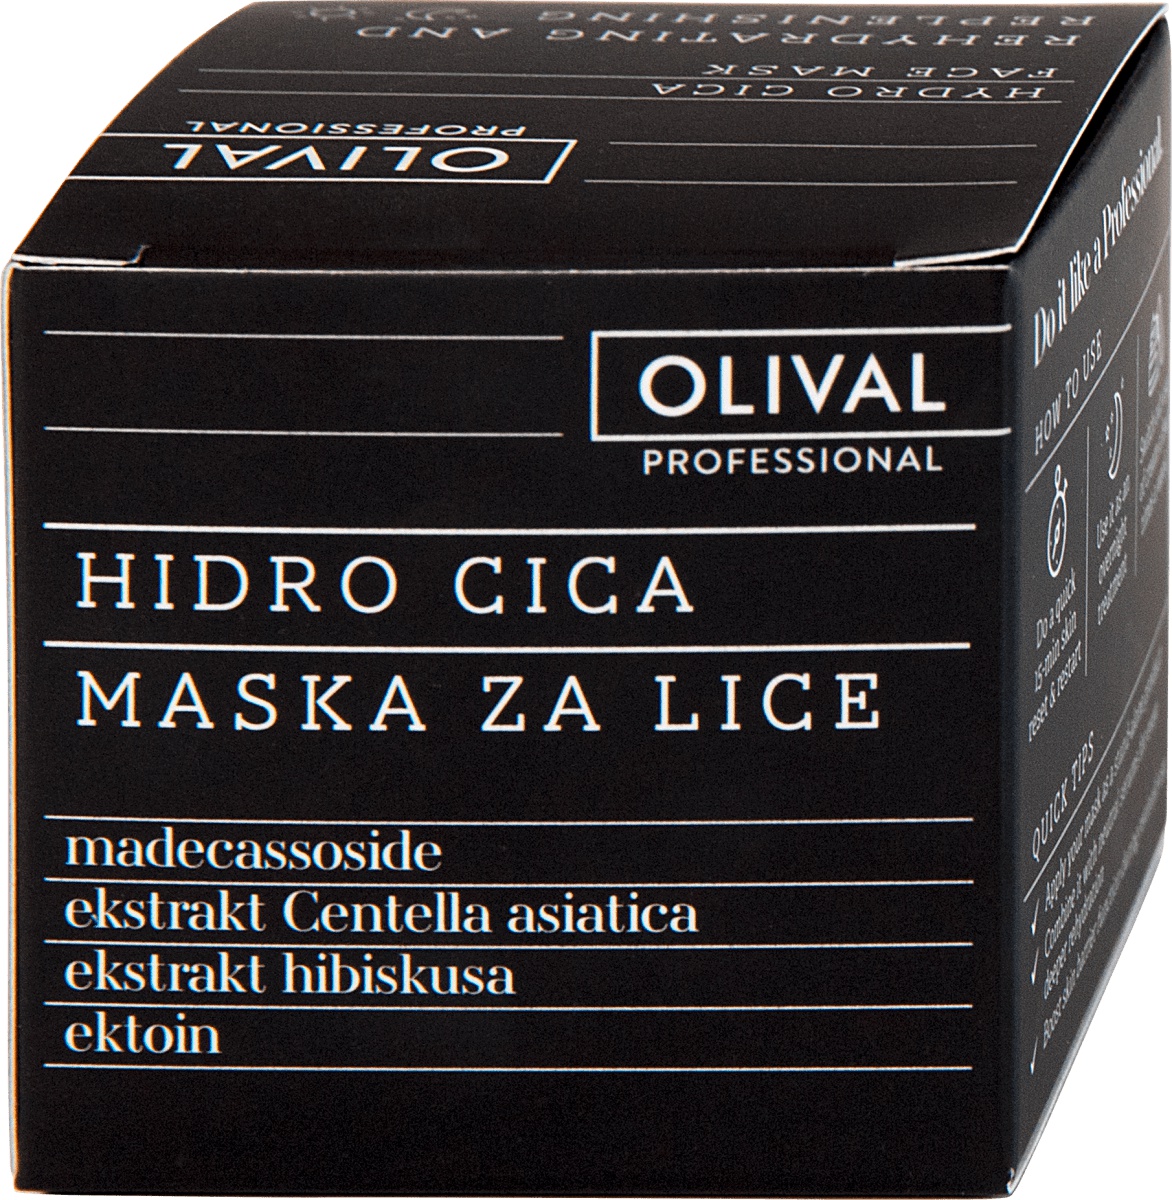 Olival Professional Hidro Cica Maska Za Lice